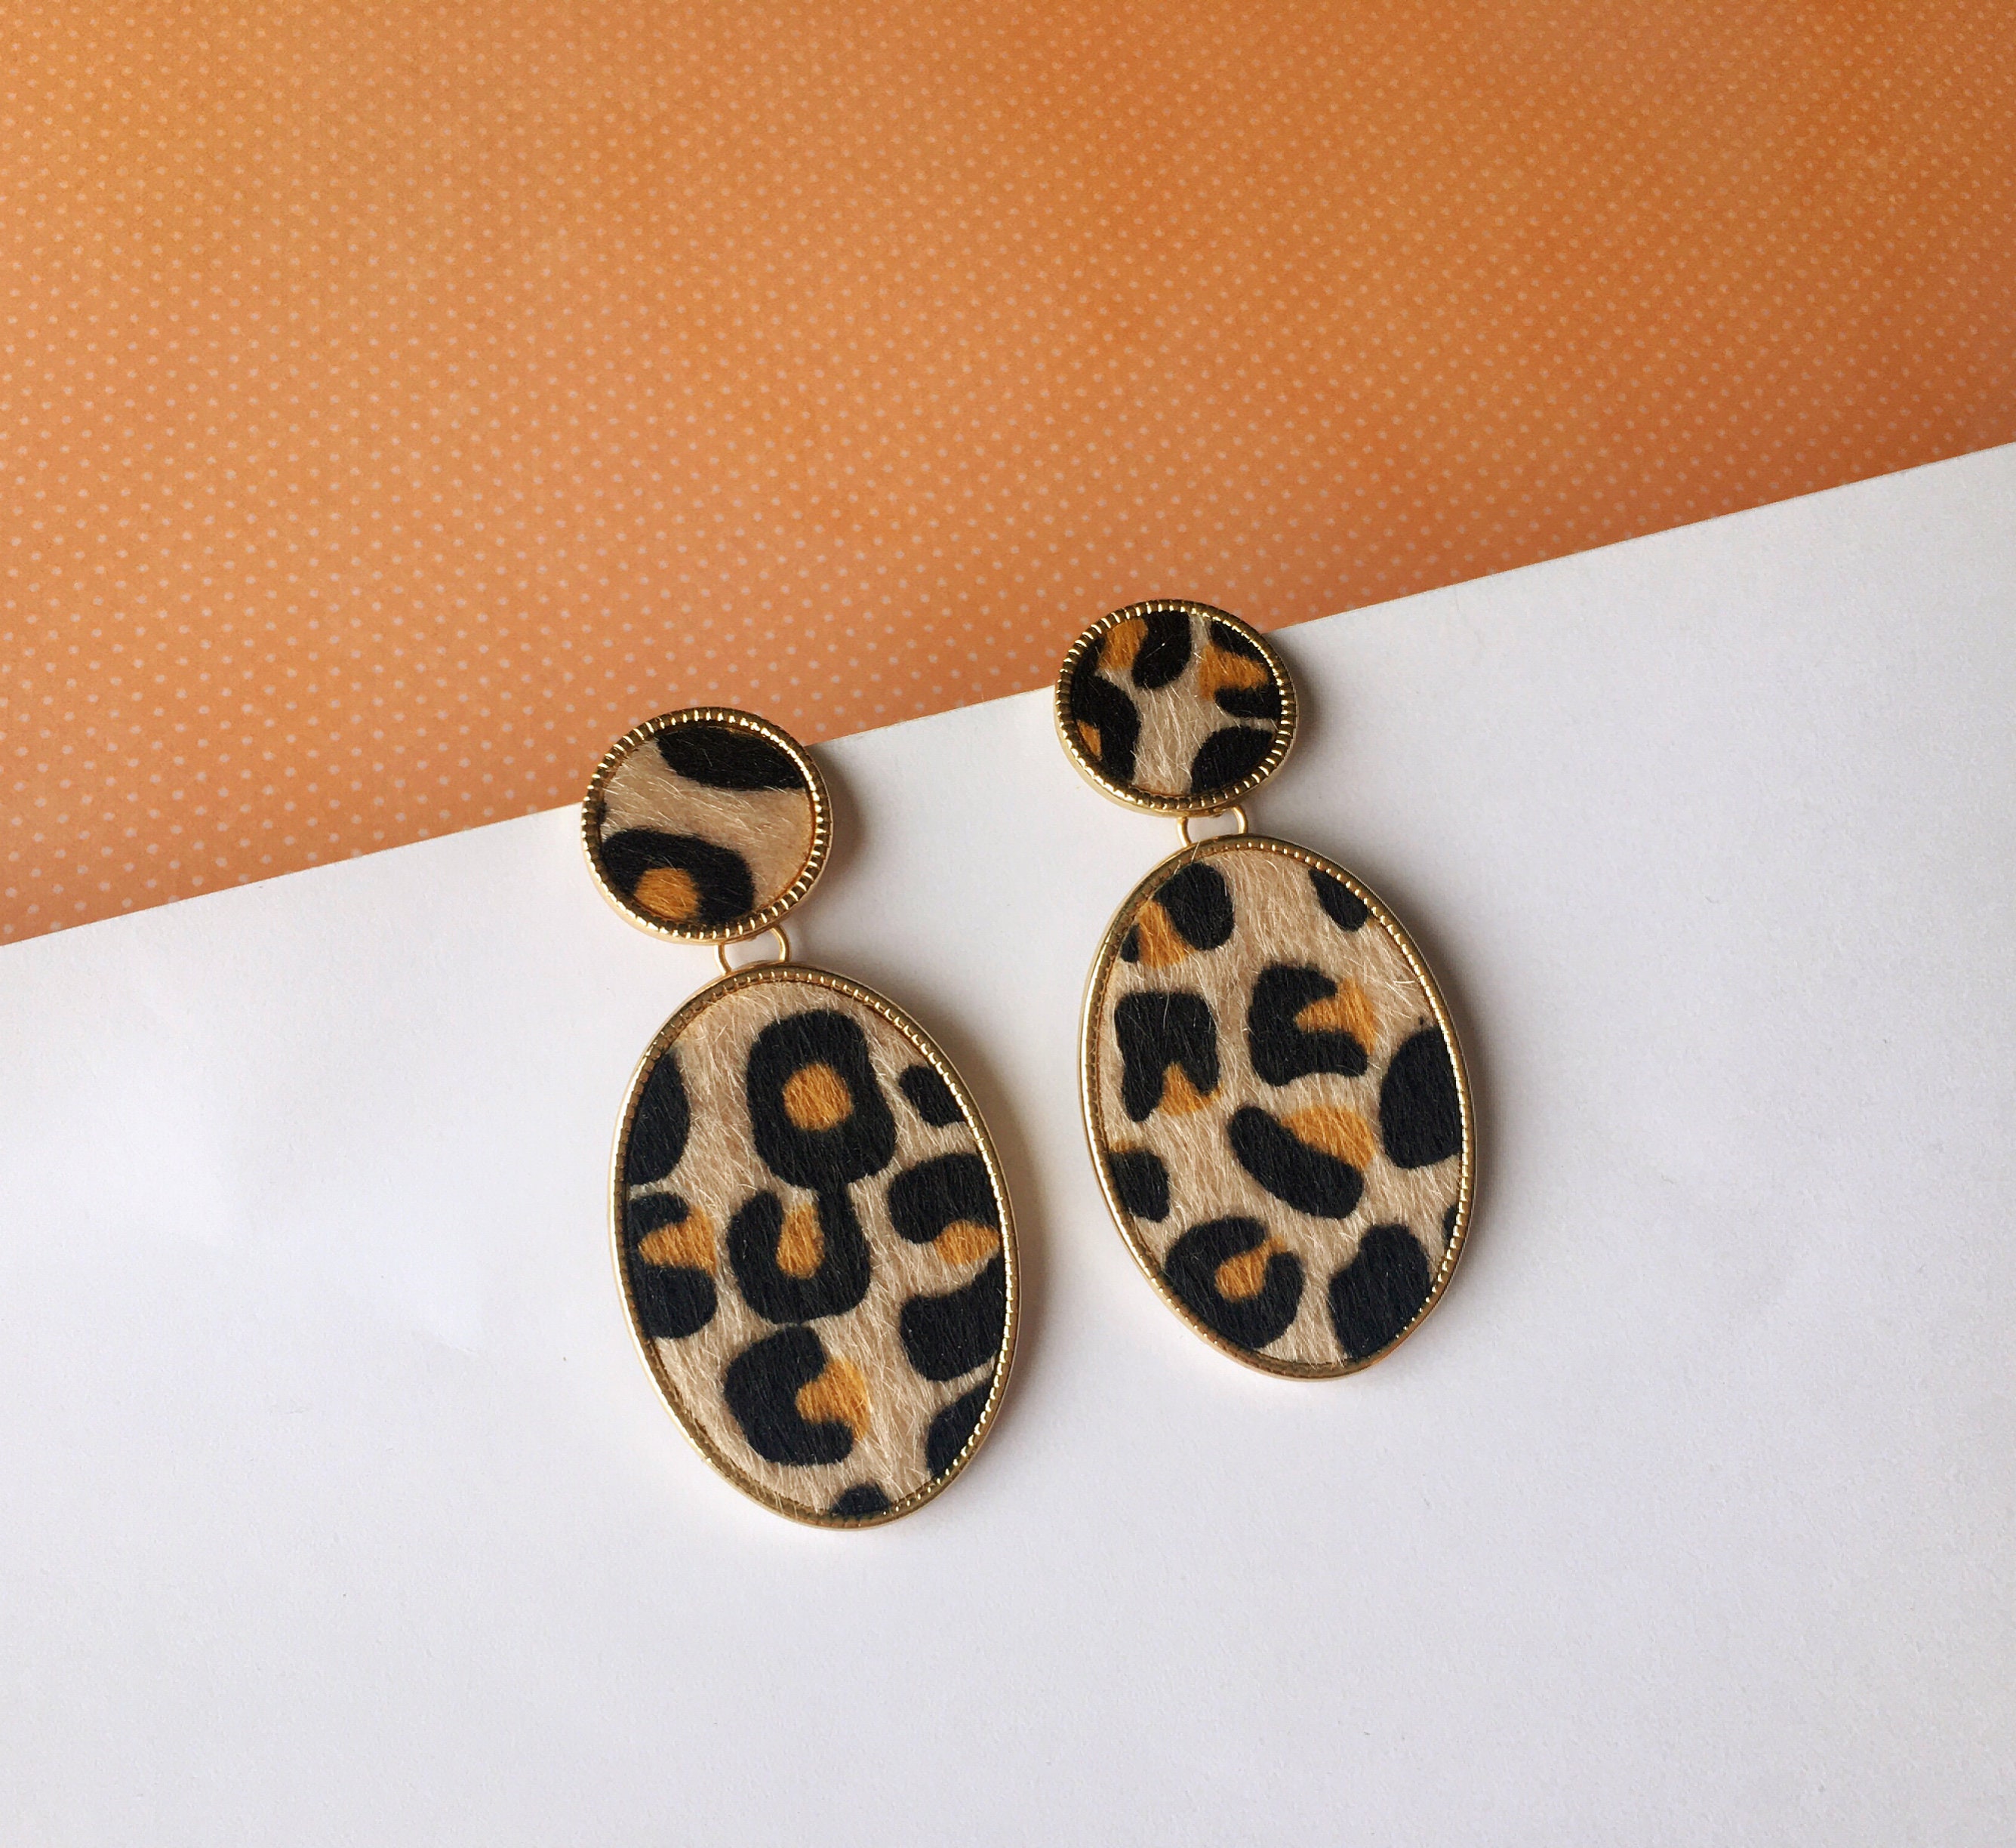 SOMESOOR Colorful Animal Skin Print Wooden Earrings Vintage Leopard Heart  Boho African Tear Drop Dangle Jewelry For Women Gift